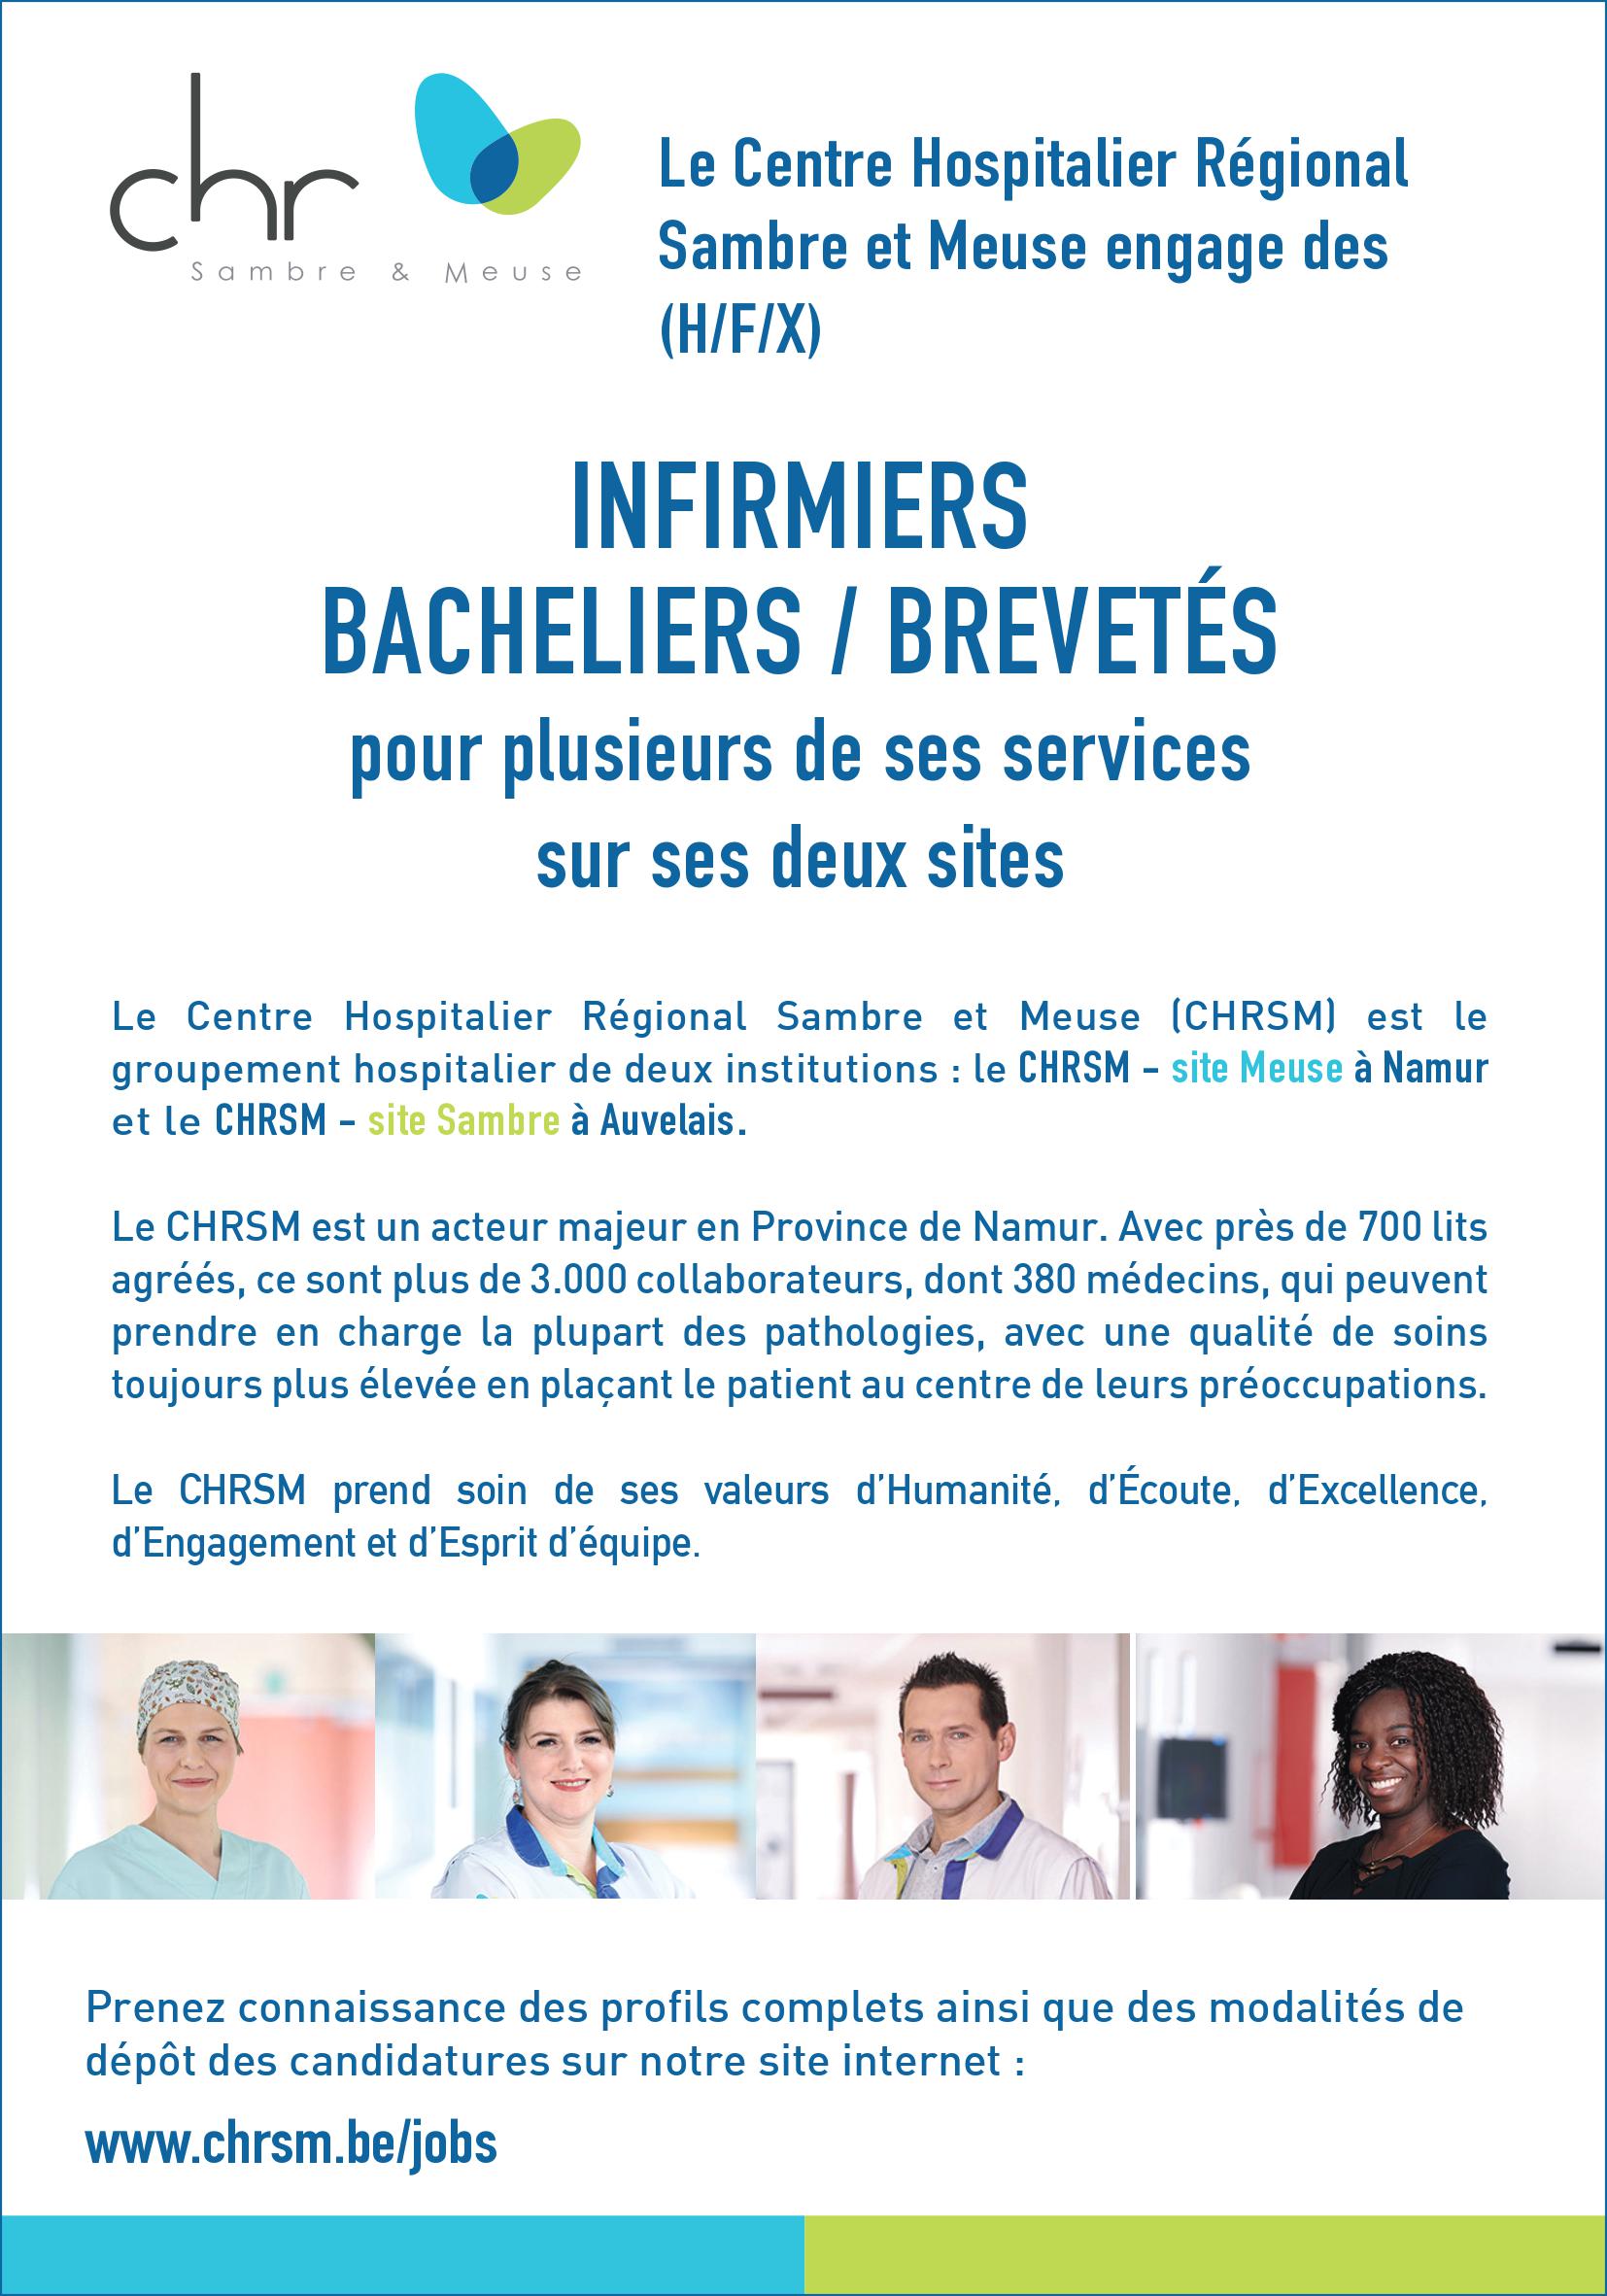 Le Centre Hospitalier Régional Sambre et Meuse engage des (H/F/X) infirmiers bacheliers / brevetés pour plusieurs de ses services sur ses deux sites